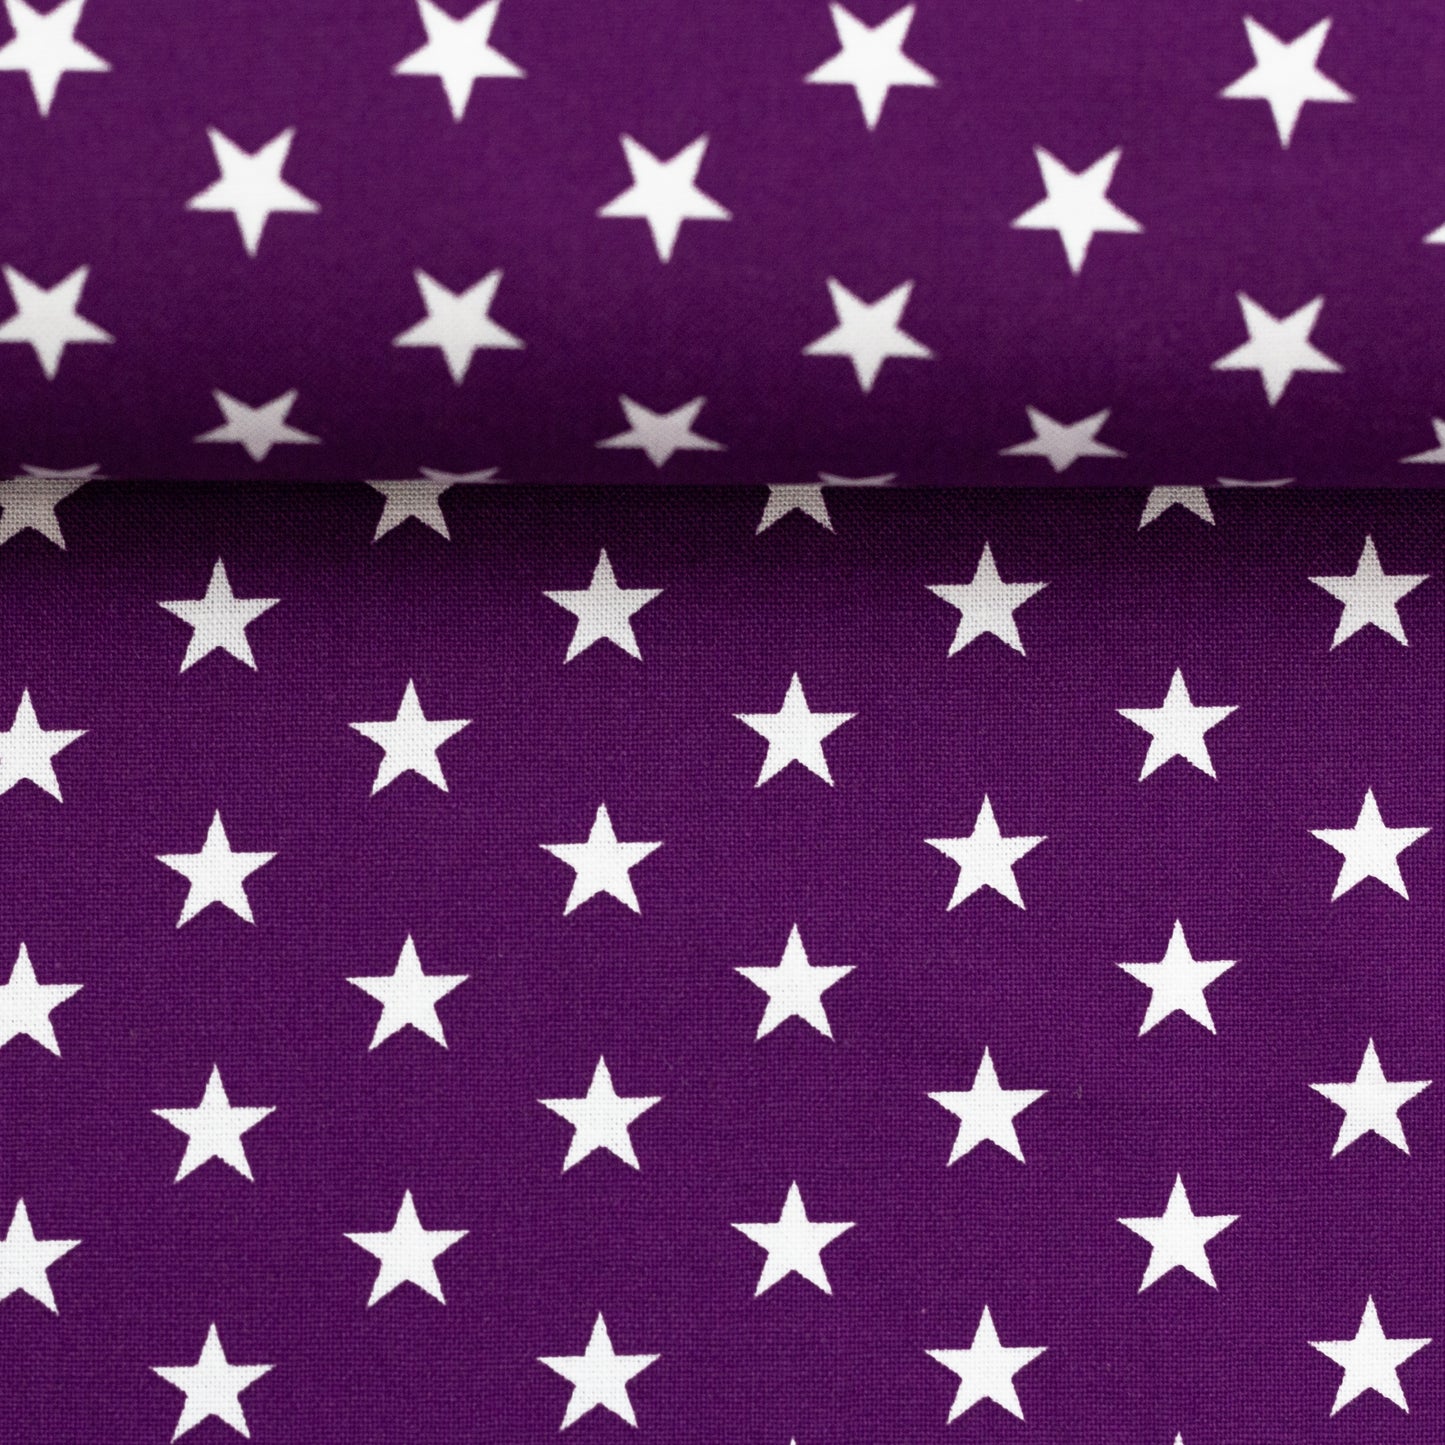 Baumwolle Sterne violett